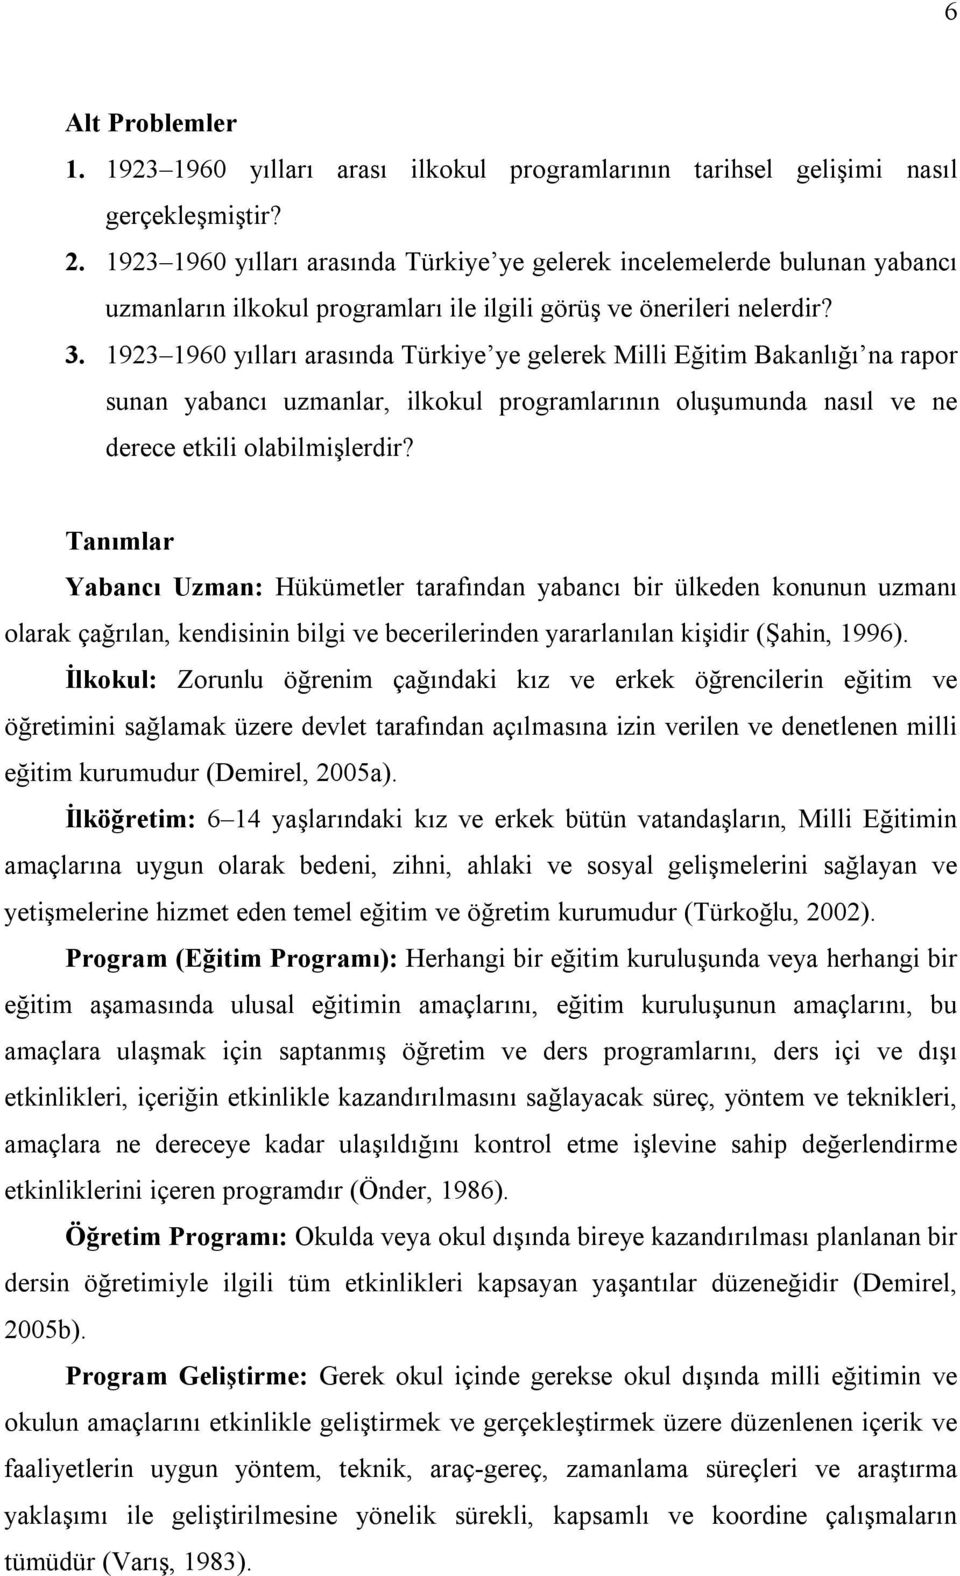 1923 1960 yılları arasında Türkiye ye gelerek Milli Eğitim Bakanlığı na rapor sunan yabancı uzmanlar, ilkokul programlarının oluşumunda nasıl ve ne derece etkili olabilmişlerdir?